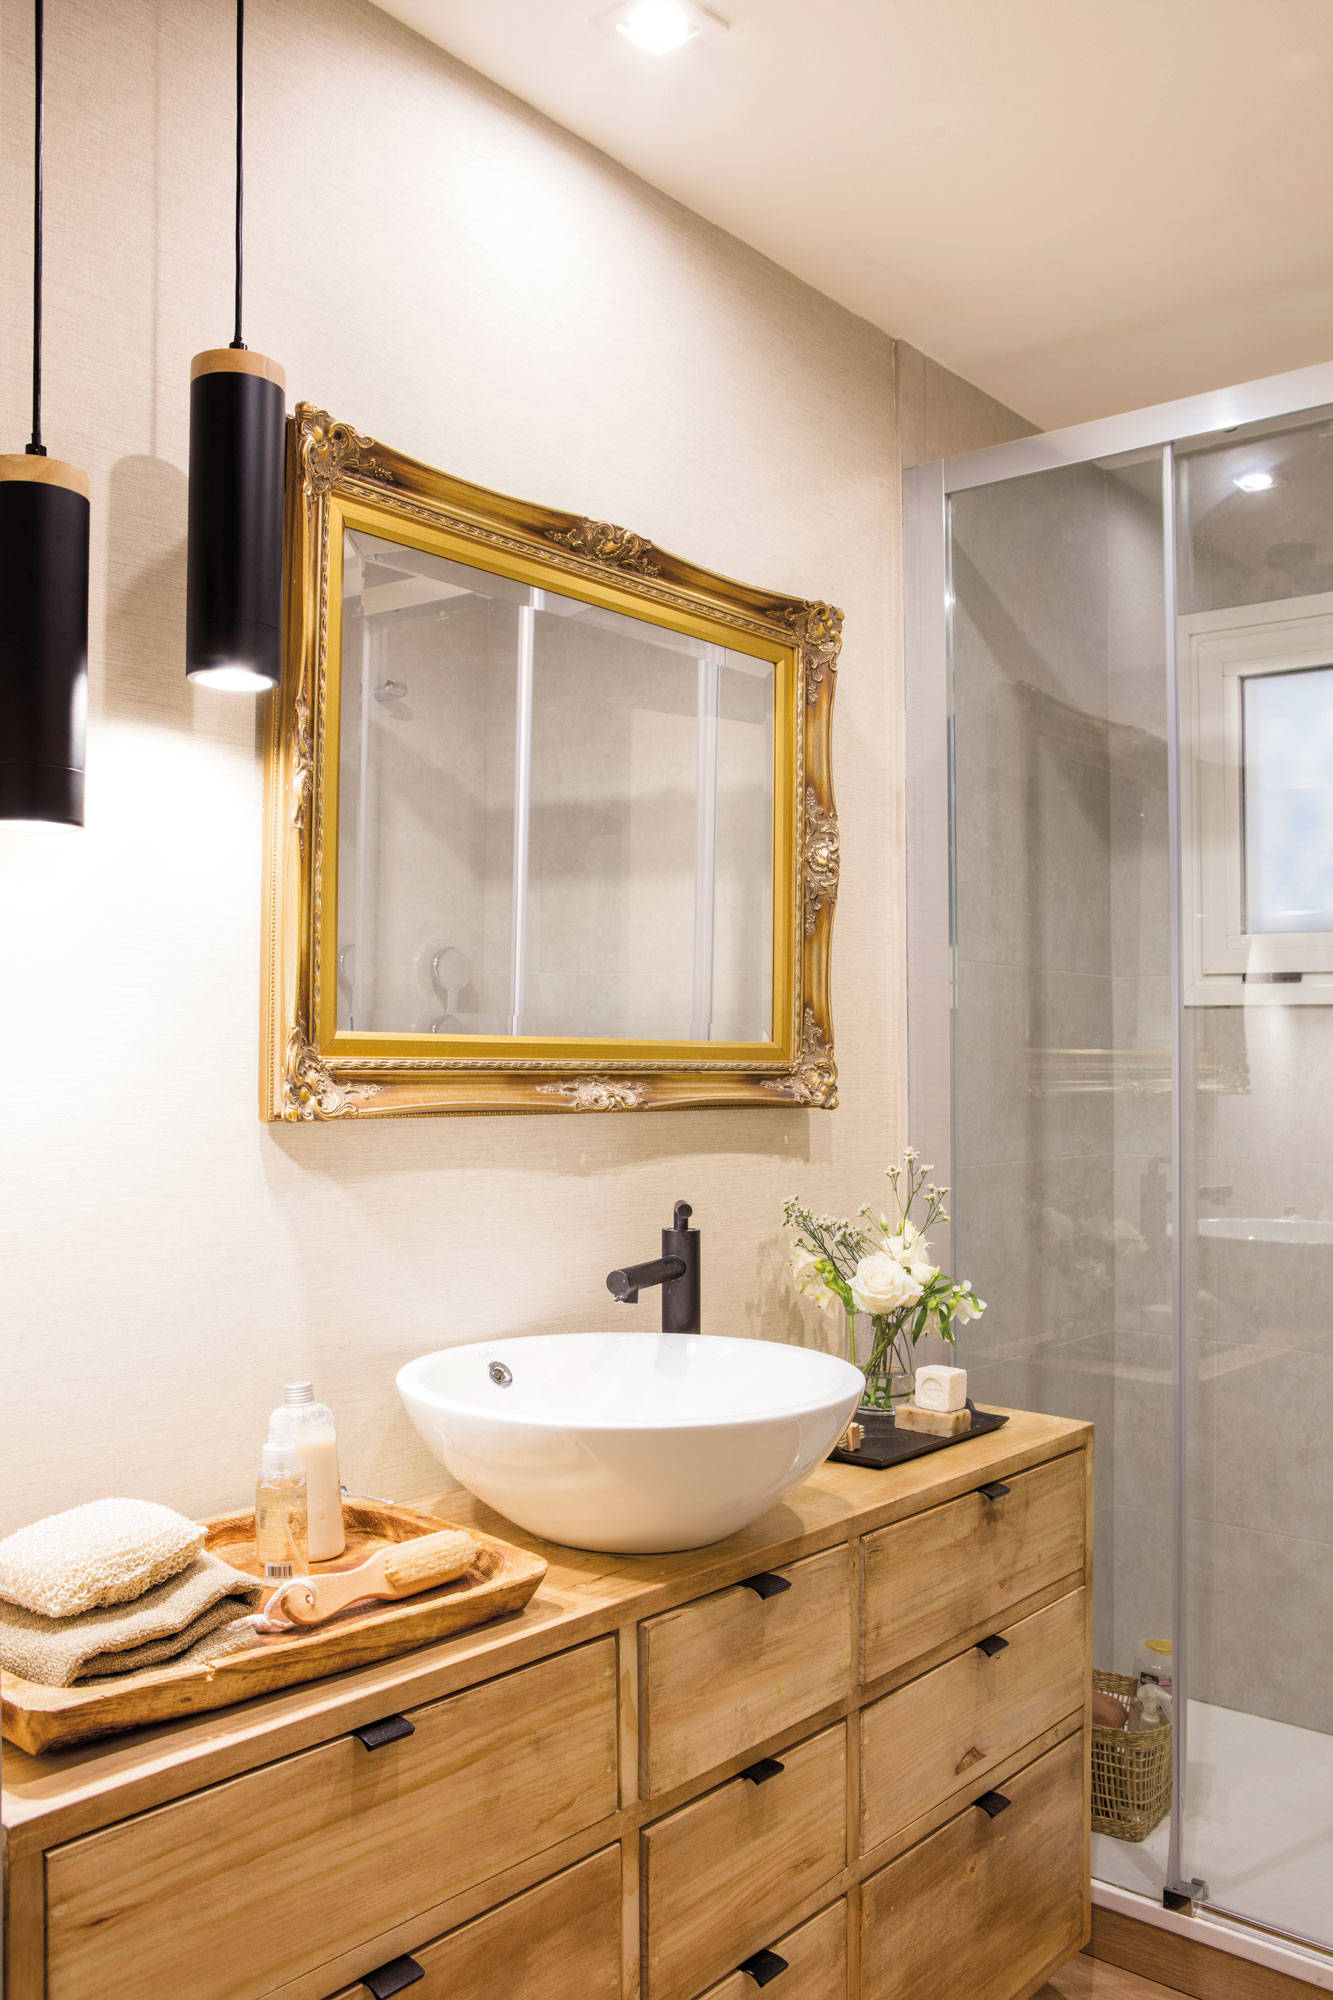 Baño con mueble de madera, espejo con marco dorado y lámparas de suspensión negras